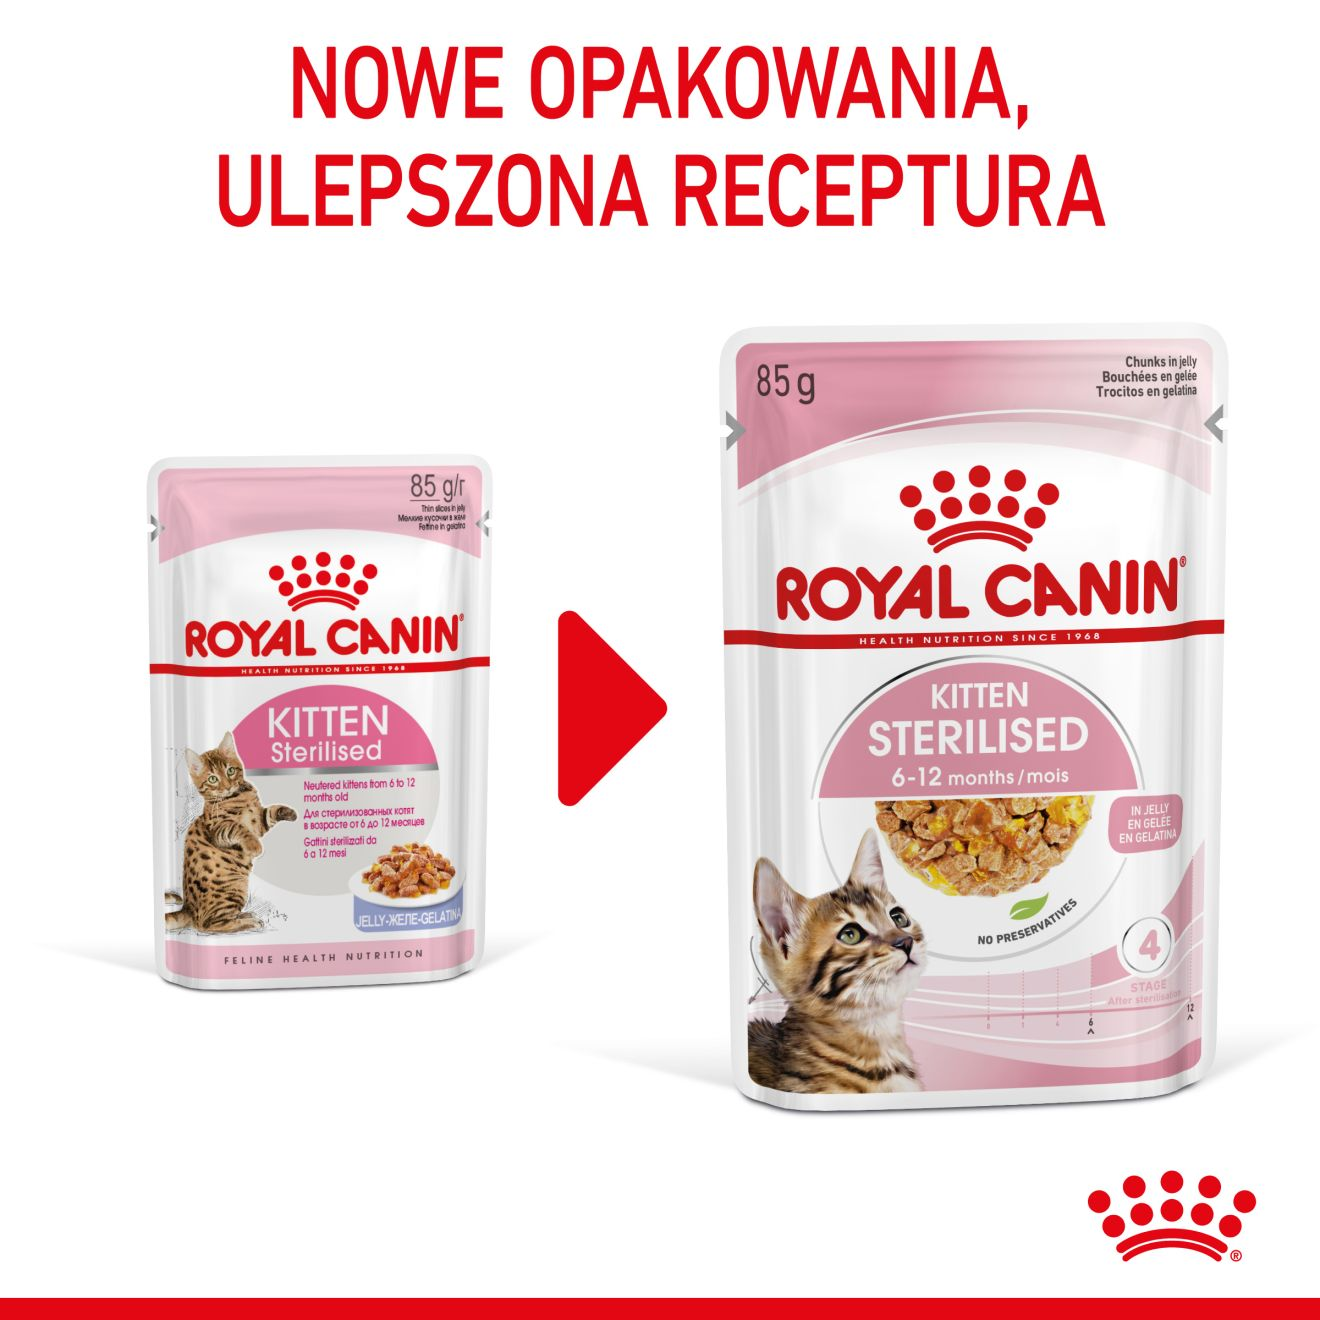 ROYAL CANIN Kitten Sterilised  karma mokra w galaretce dla kociąt do 12 miesiąca życia, sterylizowanych